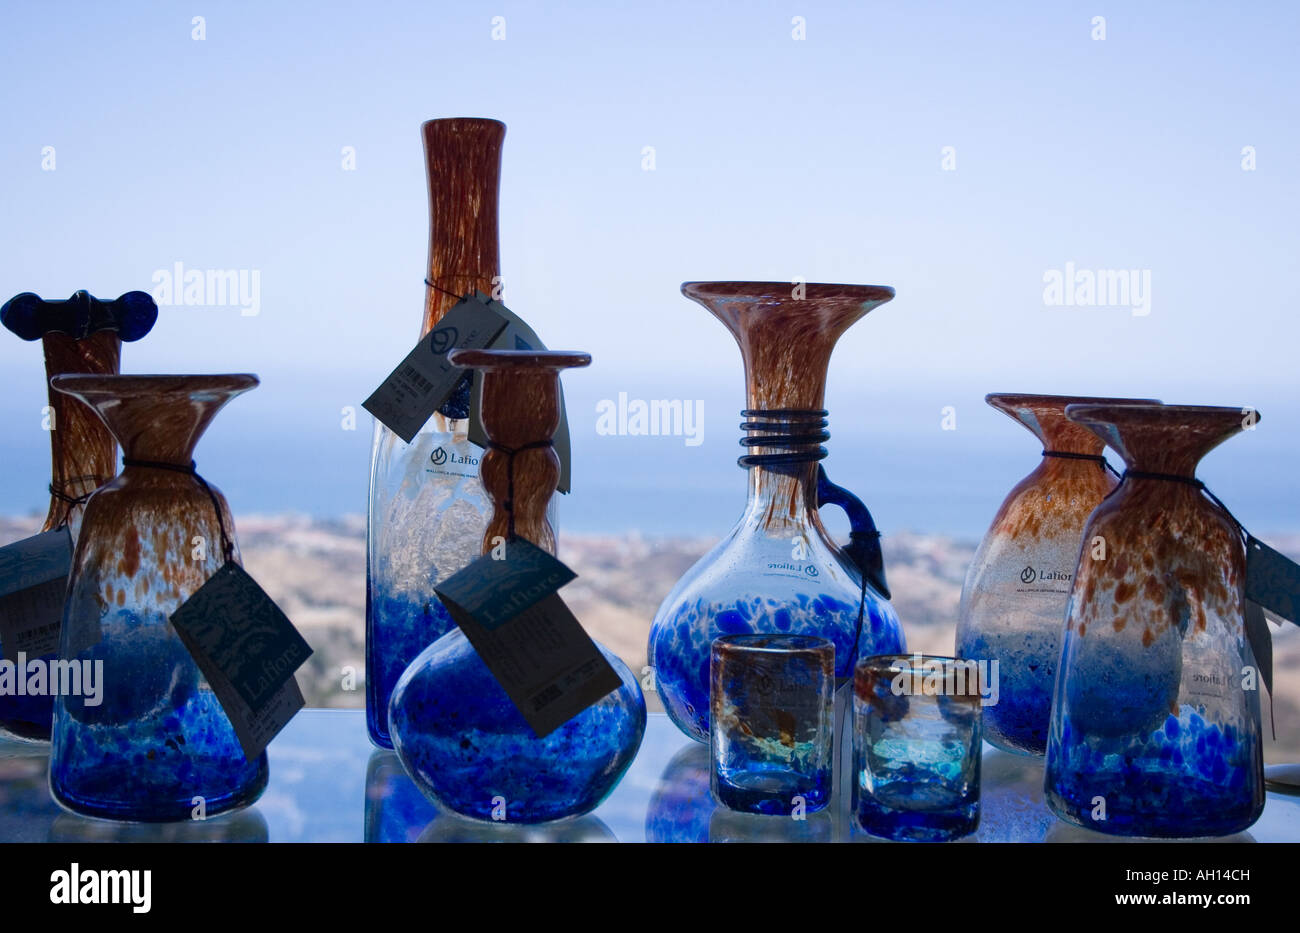 Mallorquinische Glas auf Verkauf im shop Stockfotografie - Alamy